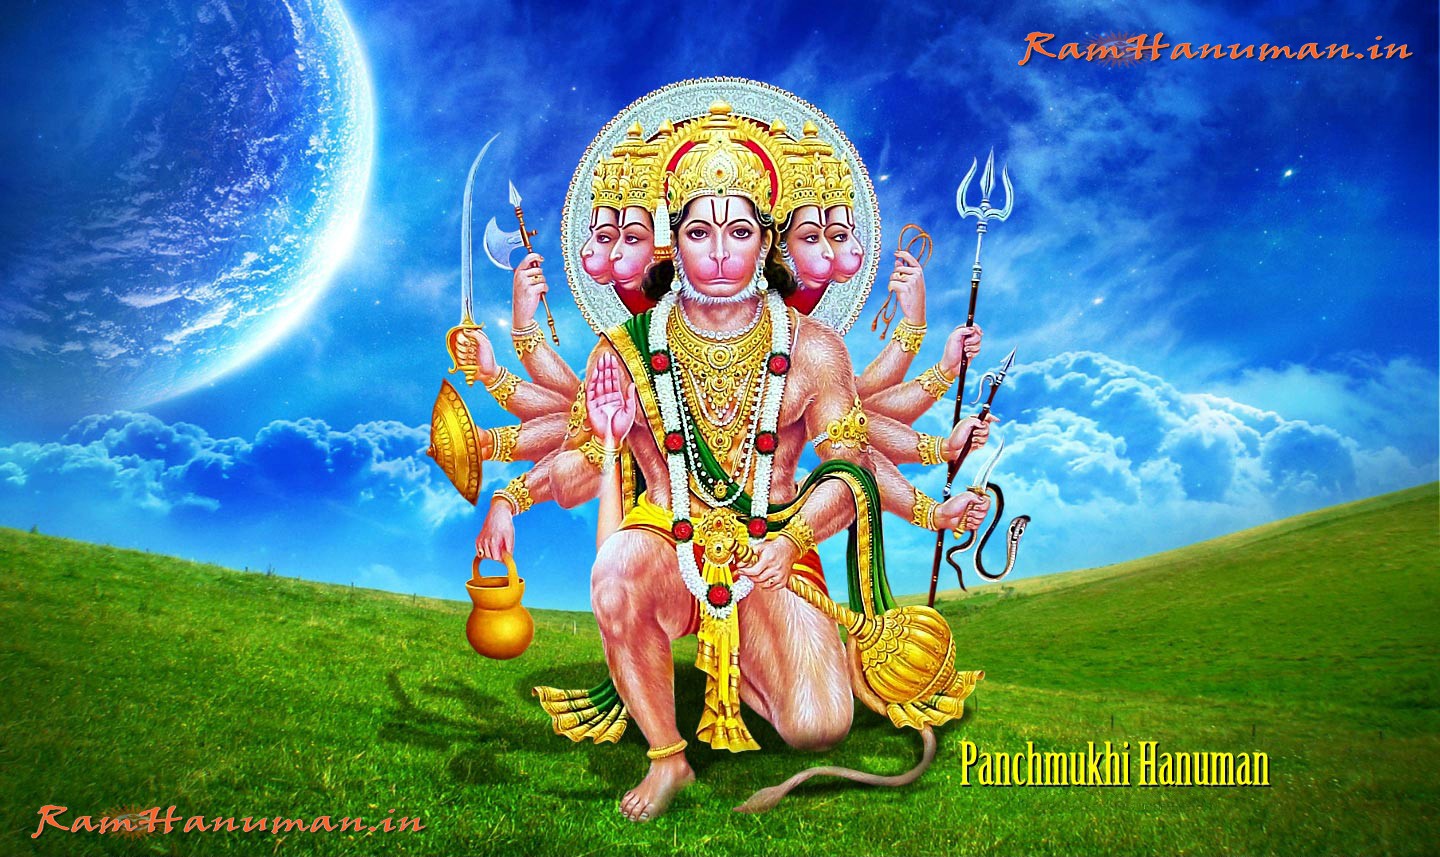 Hanuman Ji Wallpaper For Laptop - 1440x857 Wallpaper 